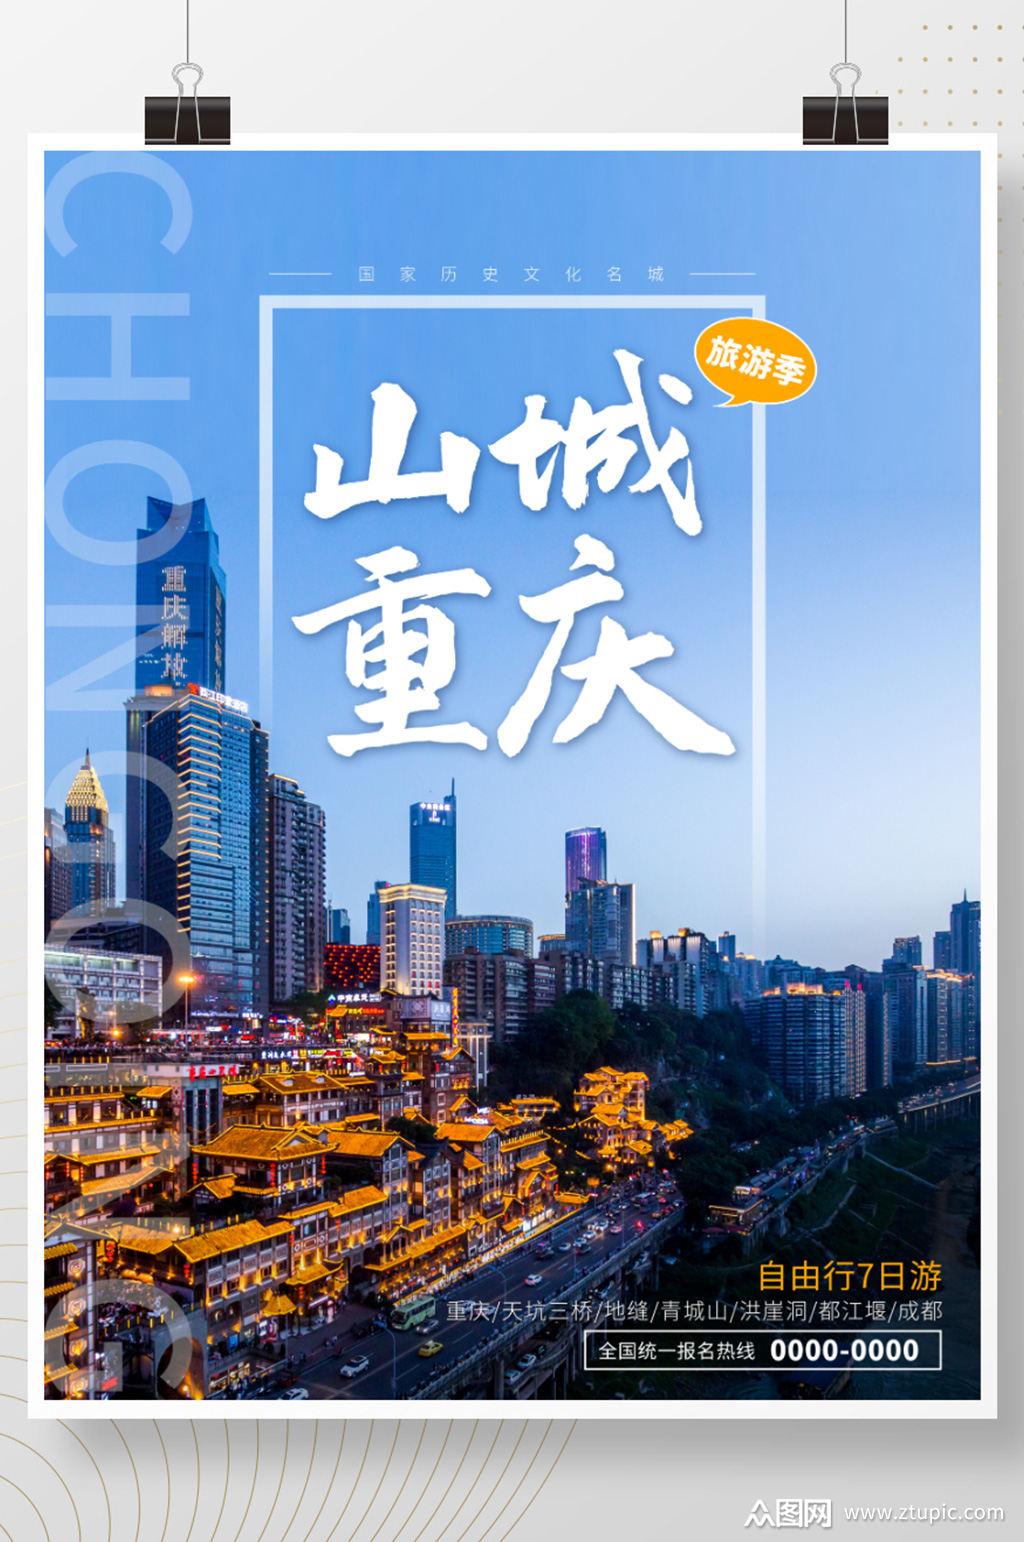 山城重庆历史文化名城旅游宣传海报素材